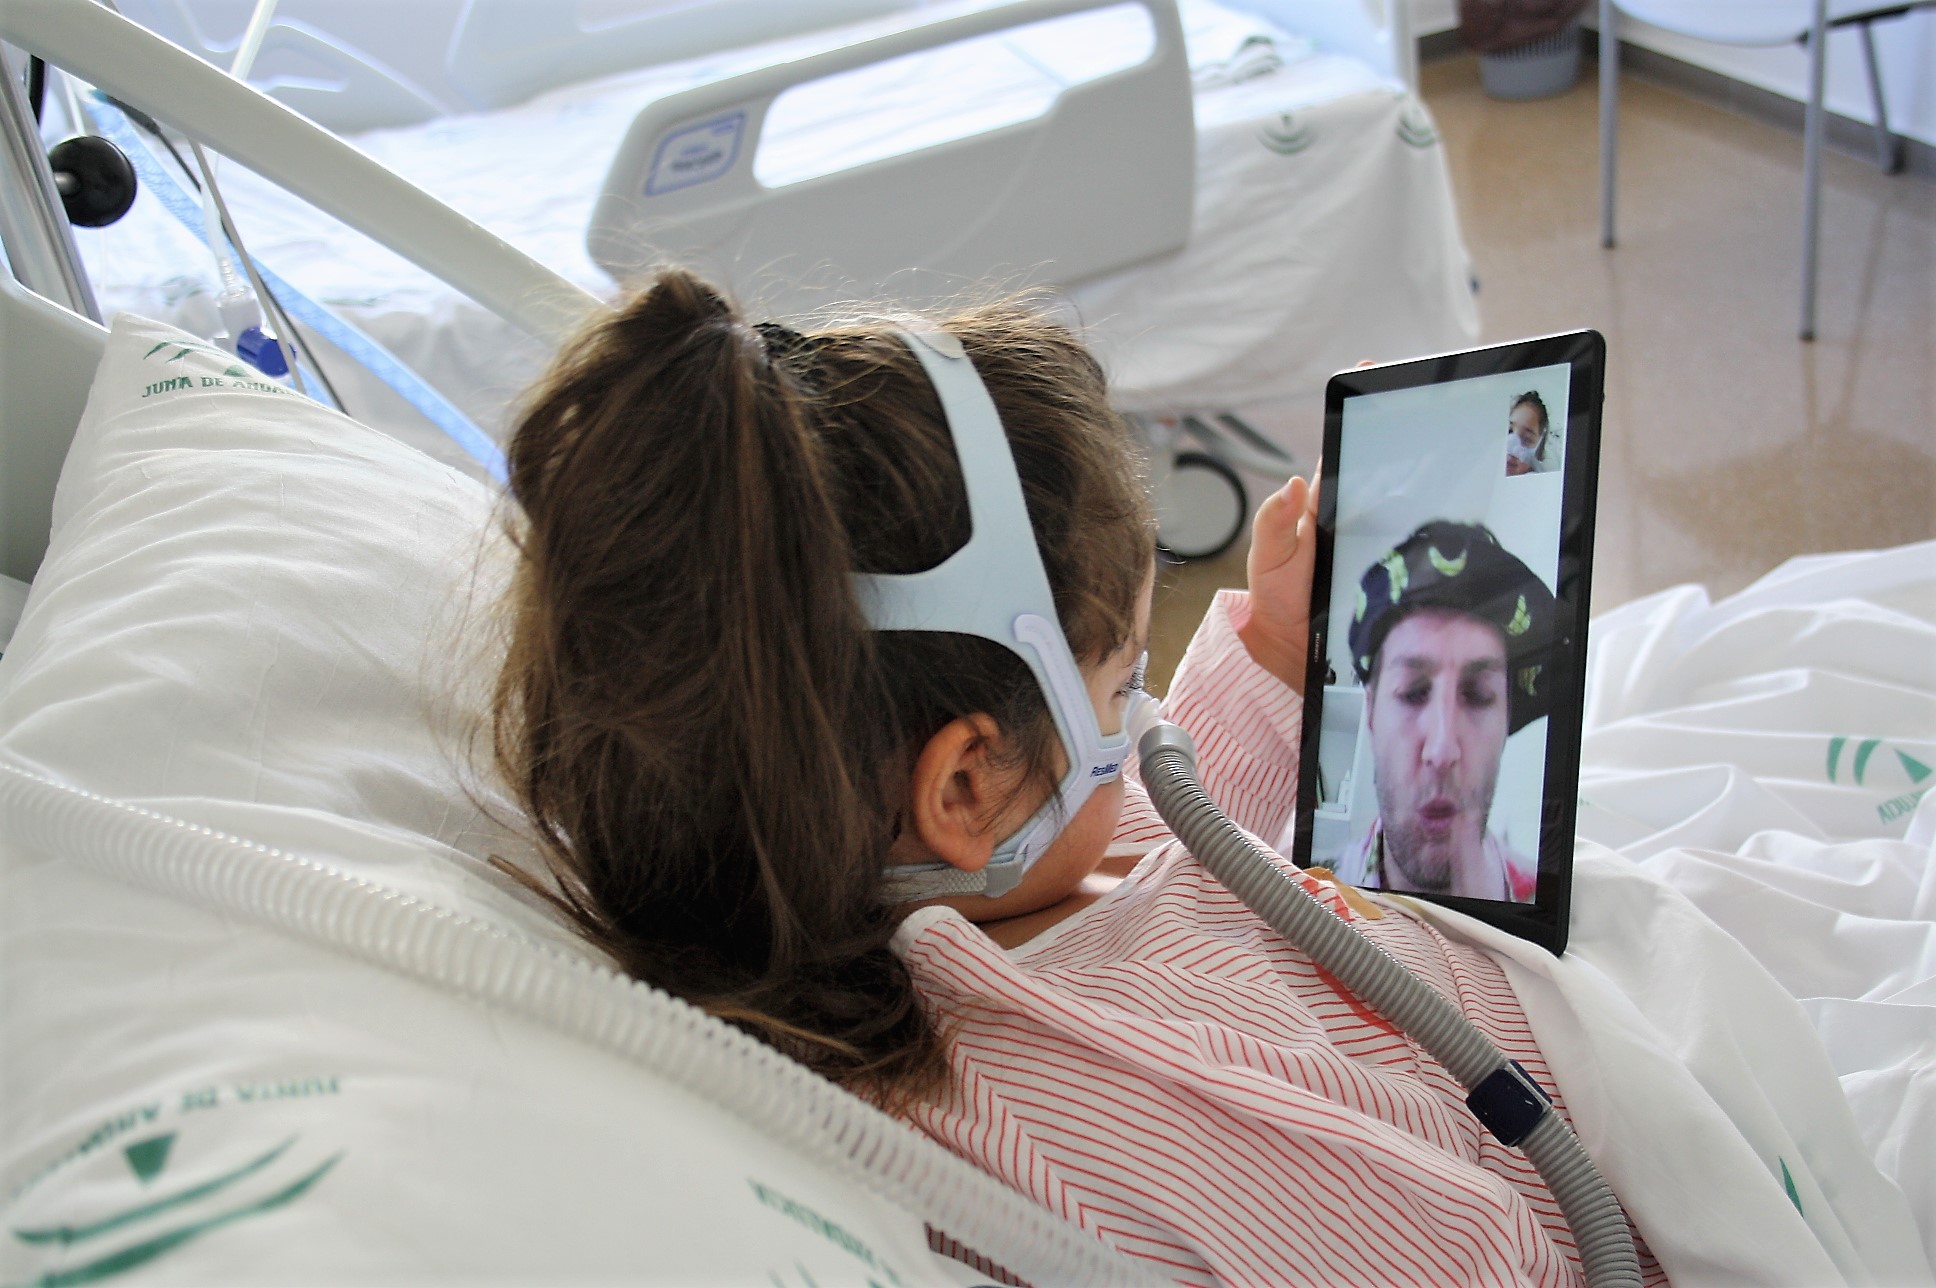 Los niños hospitalizados en el Clínico reciben la visita virtual de los ‘Doctores Sonrisa’ de la Fundación Theodora